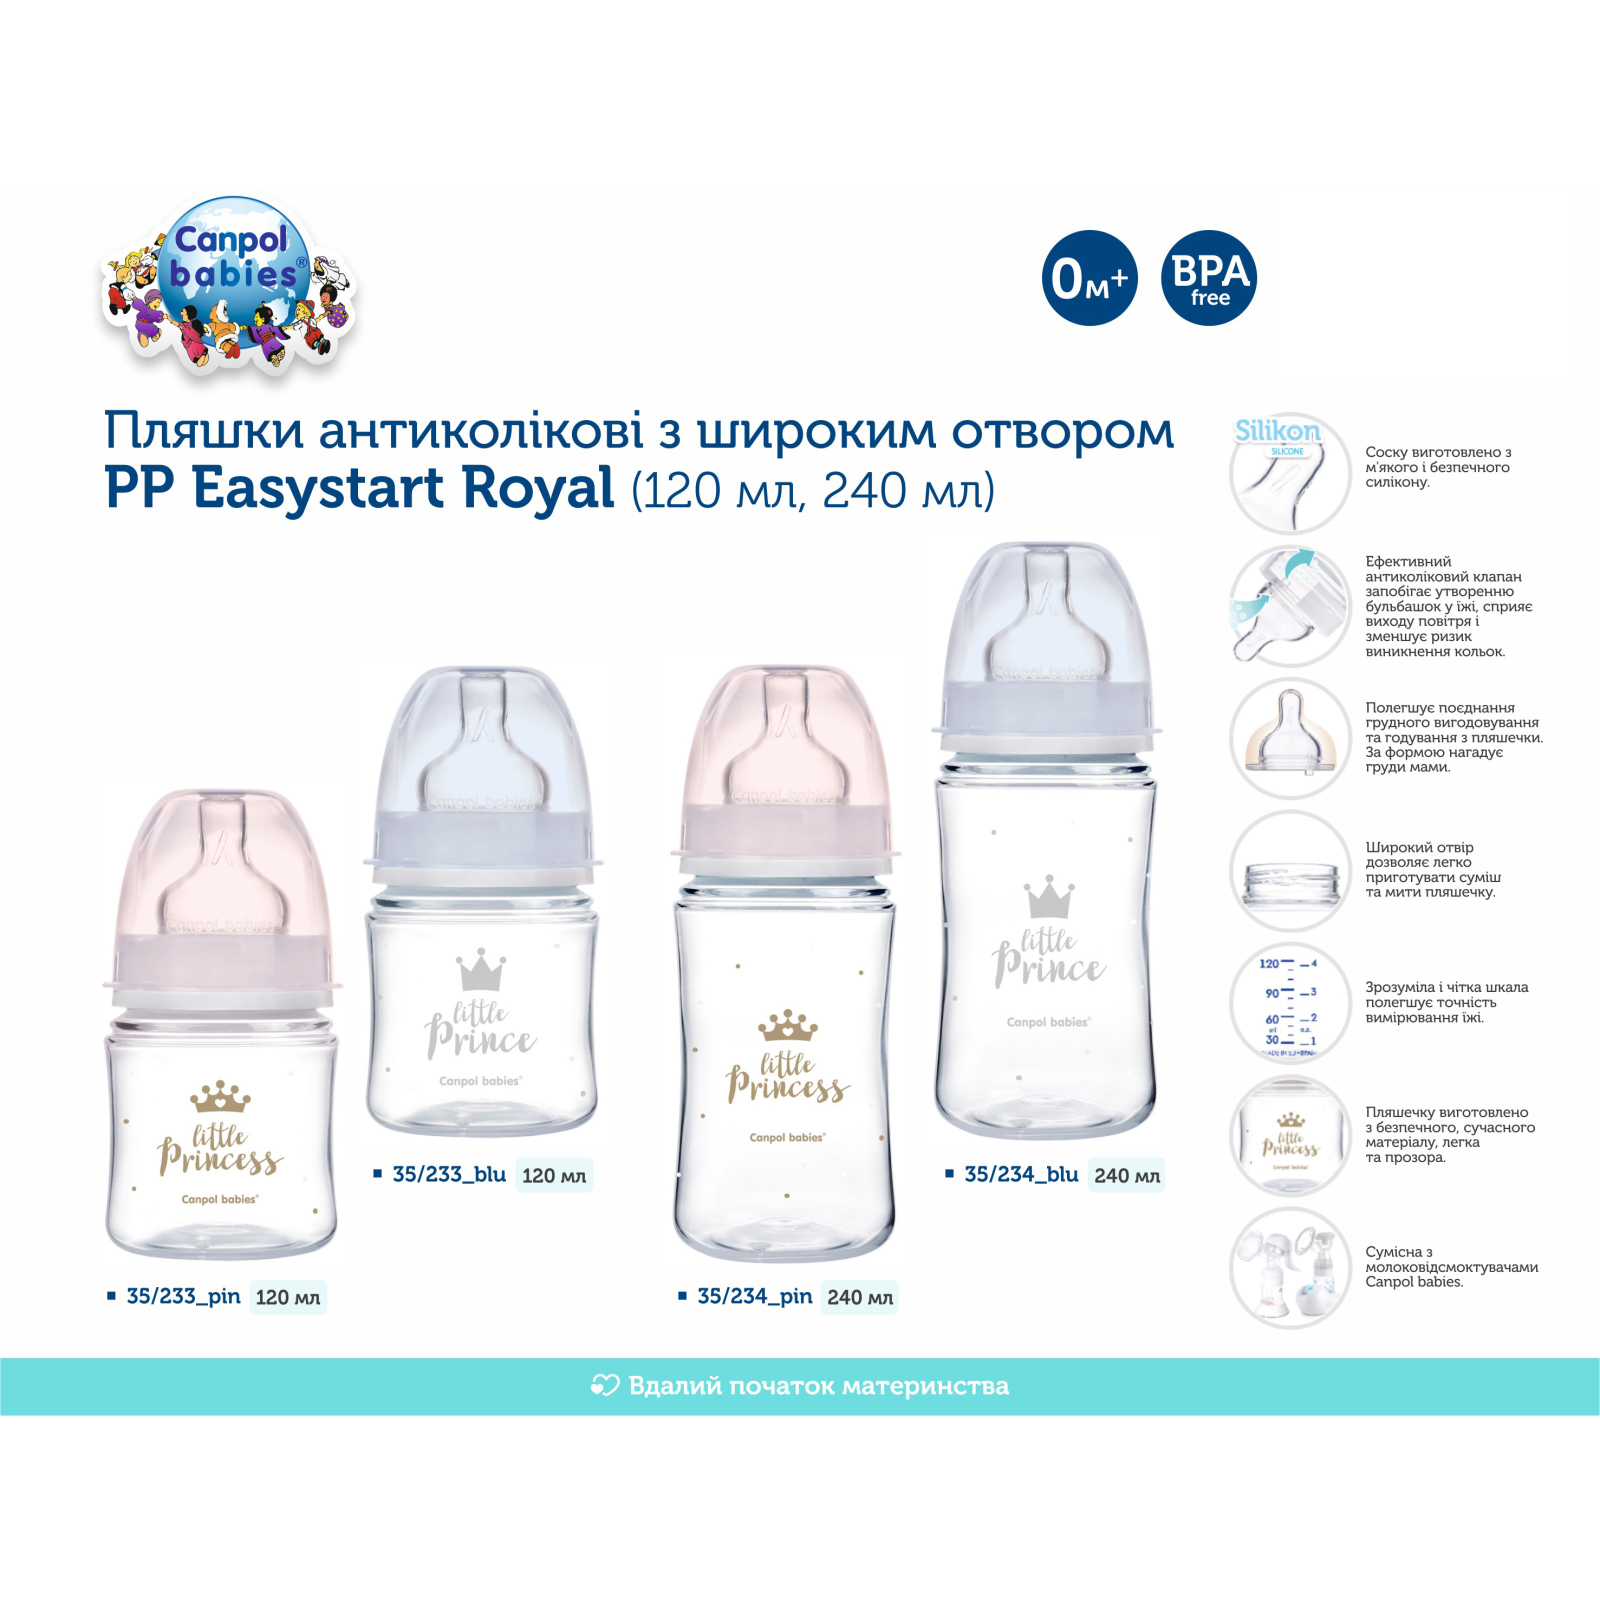 Бутылочка для кормления Canpol babies Royal Baby с широким отверстием 120 мл Розовая (35/233_pin) изображение 4